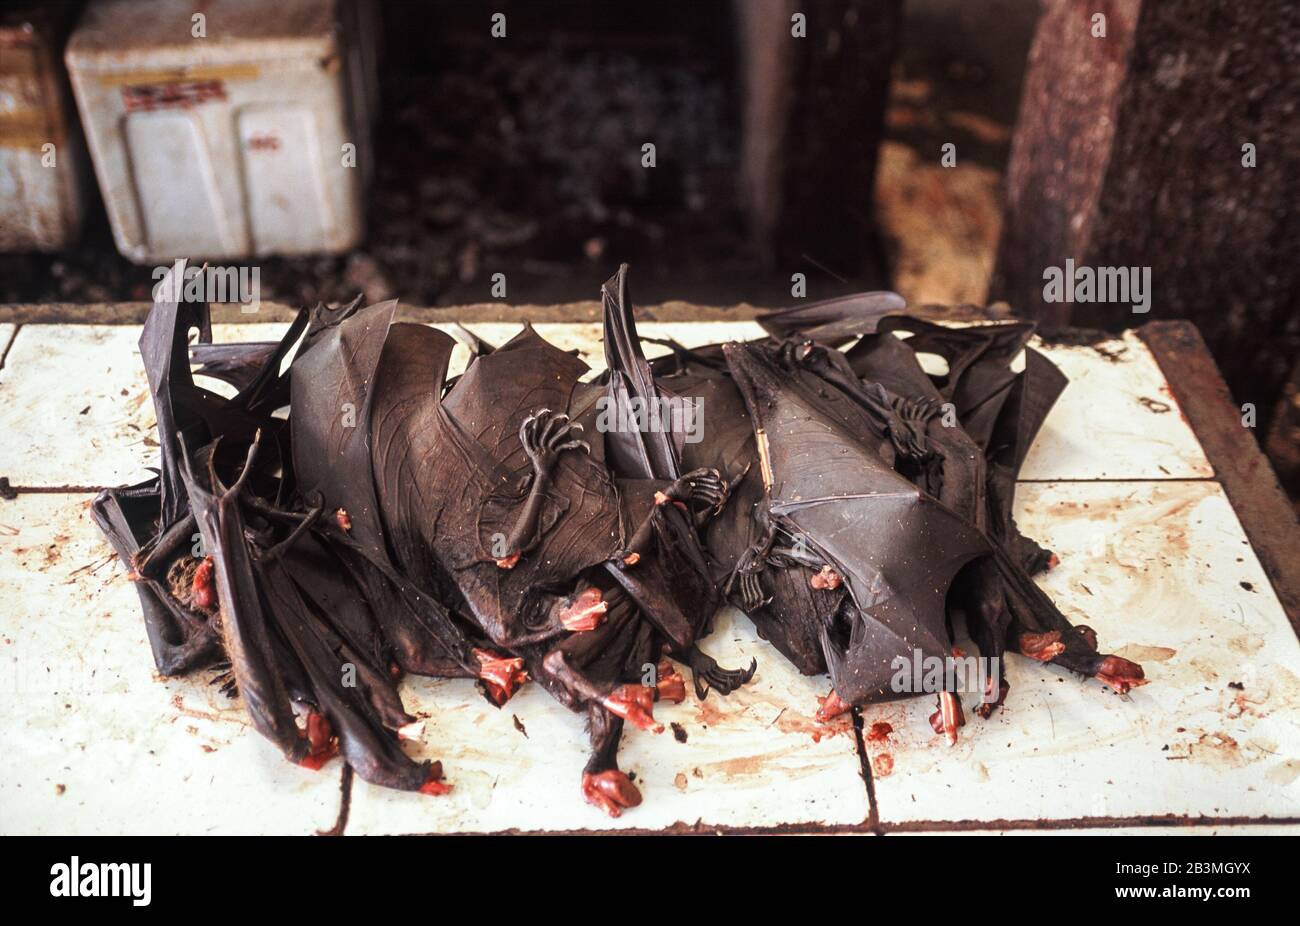 20.04.2009, Tomohon, Sulawesi, Indonésie, Asie - des chauves-souris géantes à base de fruits rôtis ou des renards volants sont offerts à la consommation à la viande extrême traditionnelle. Banque D'Images